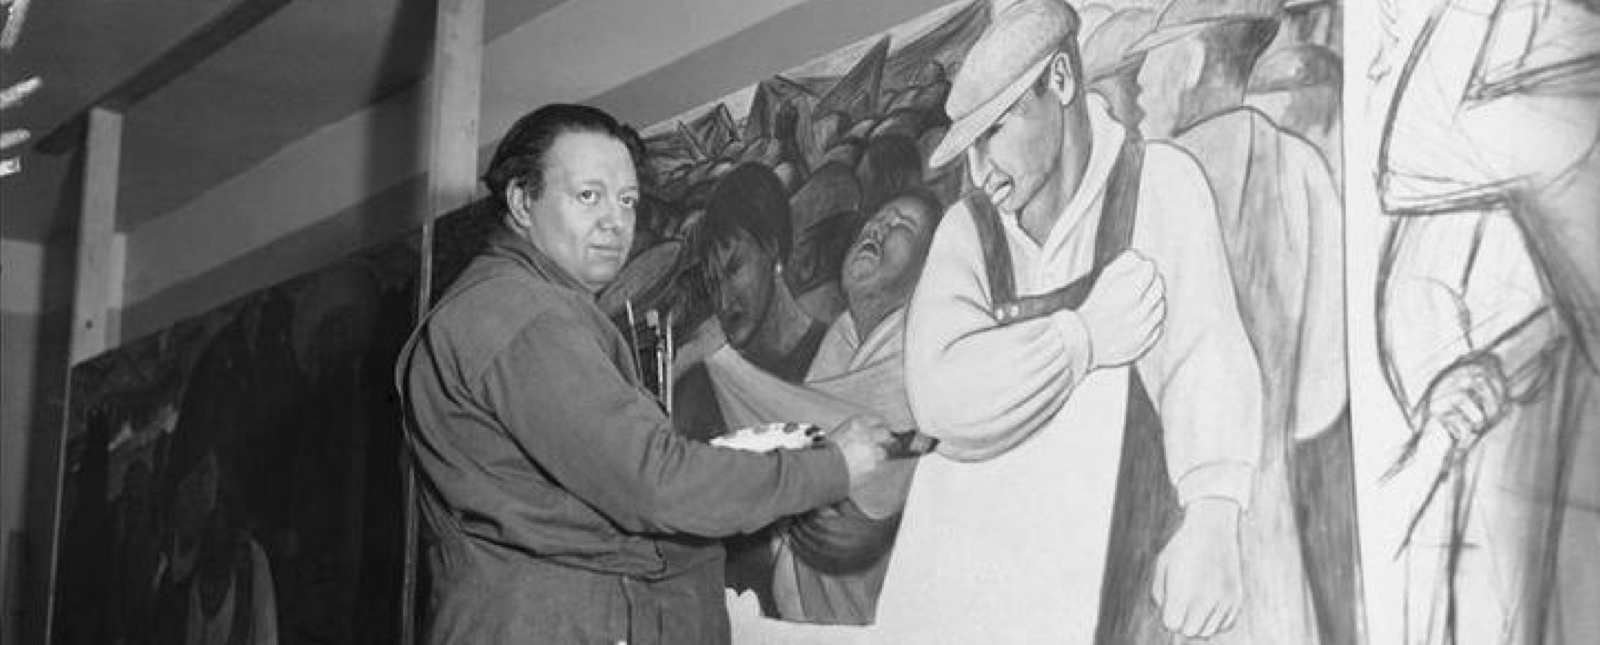 Murales de Diego Rivera y su significado - Arte